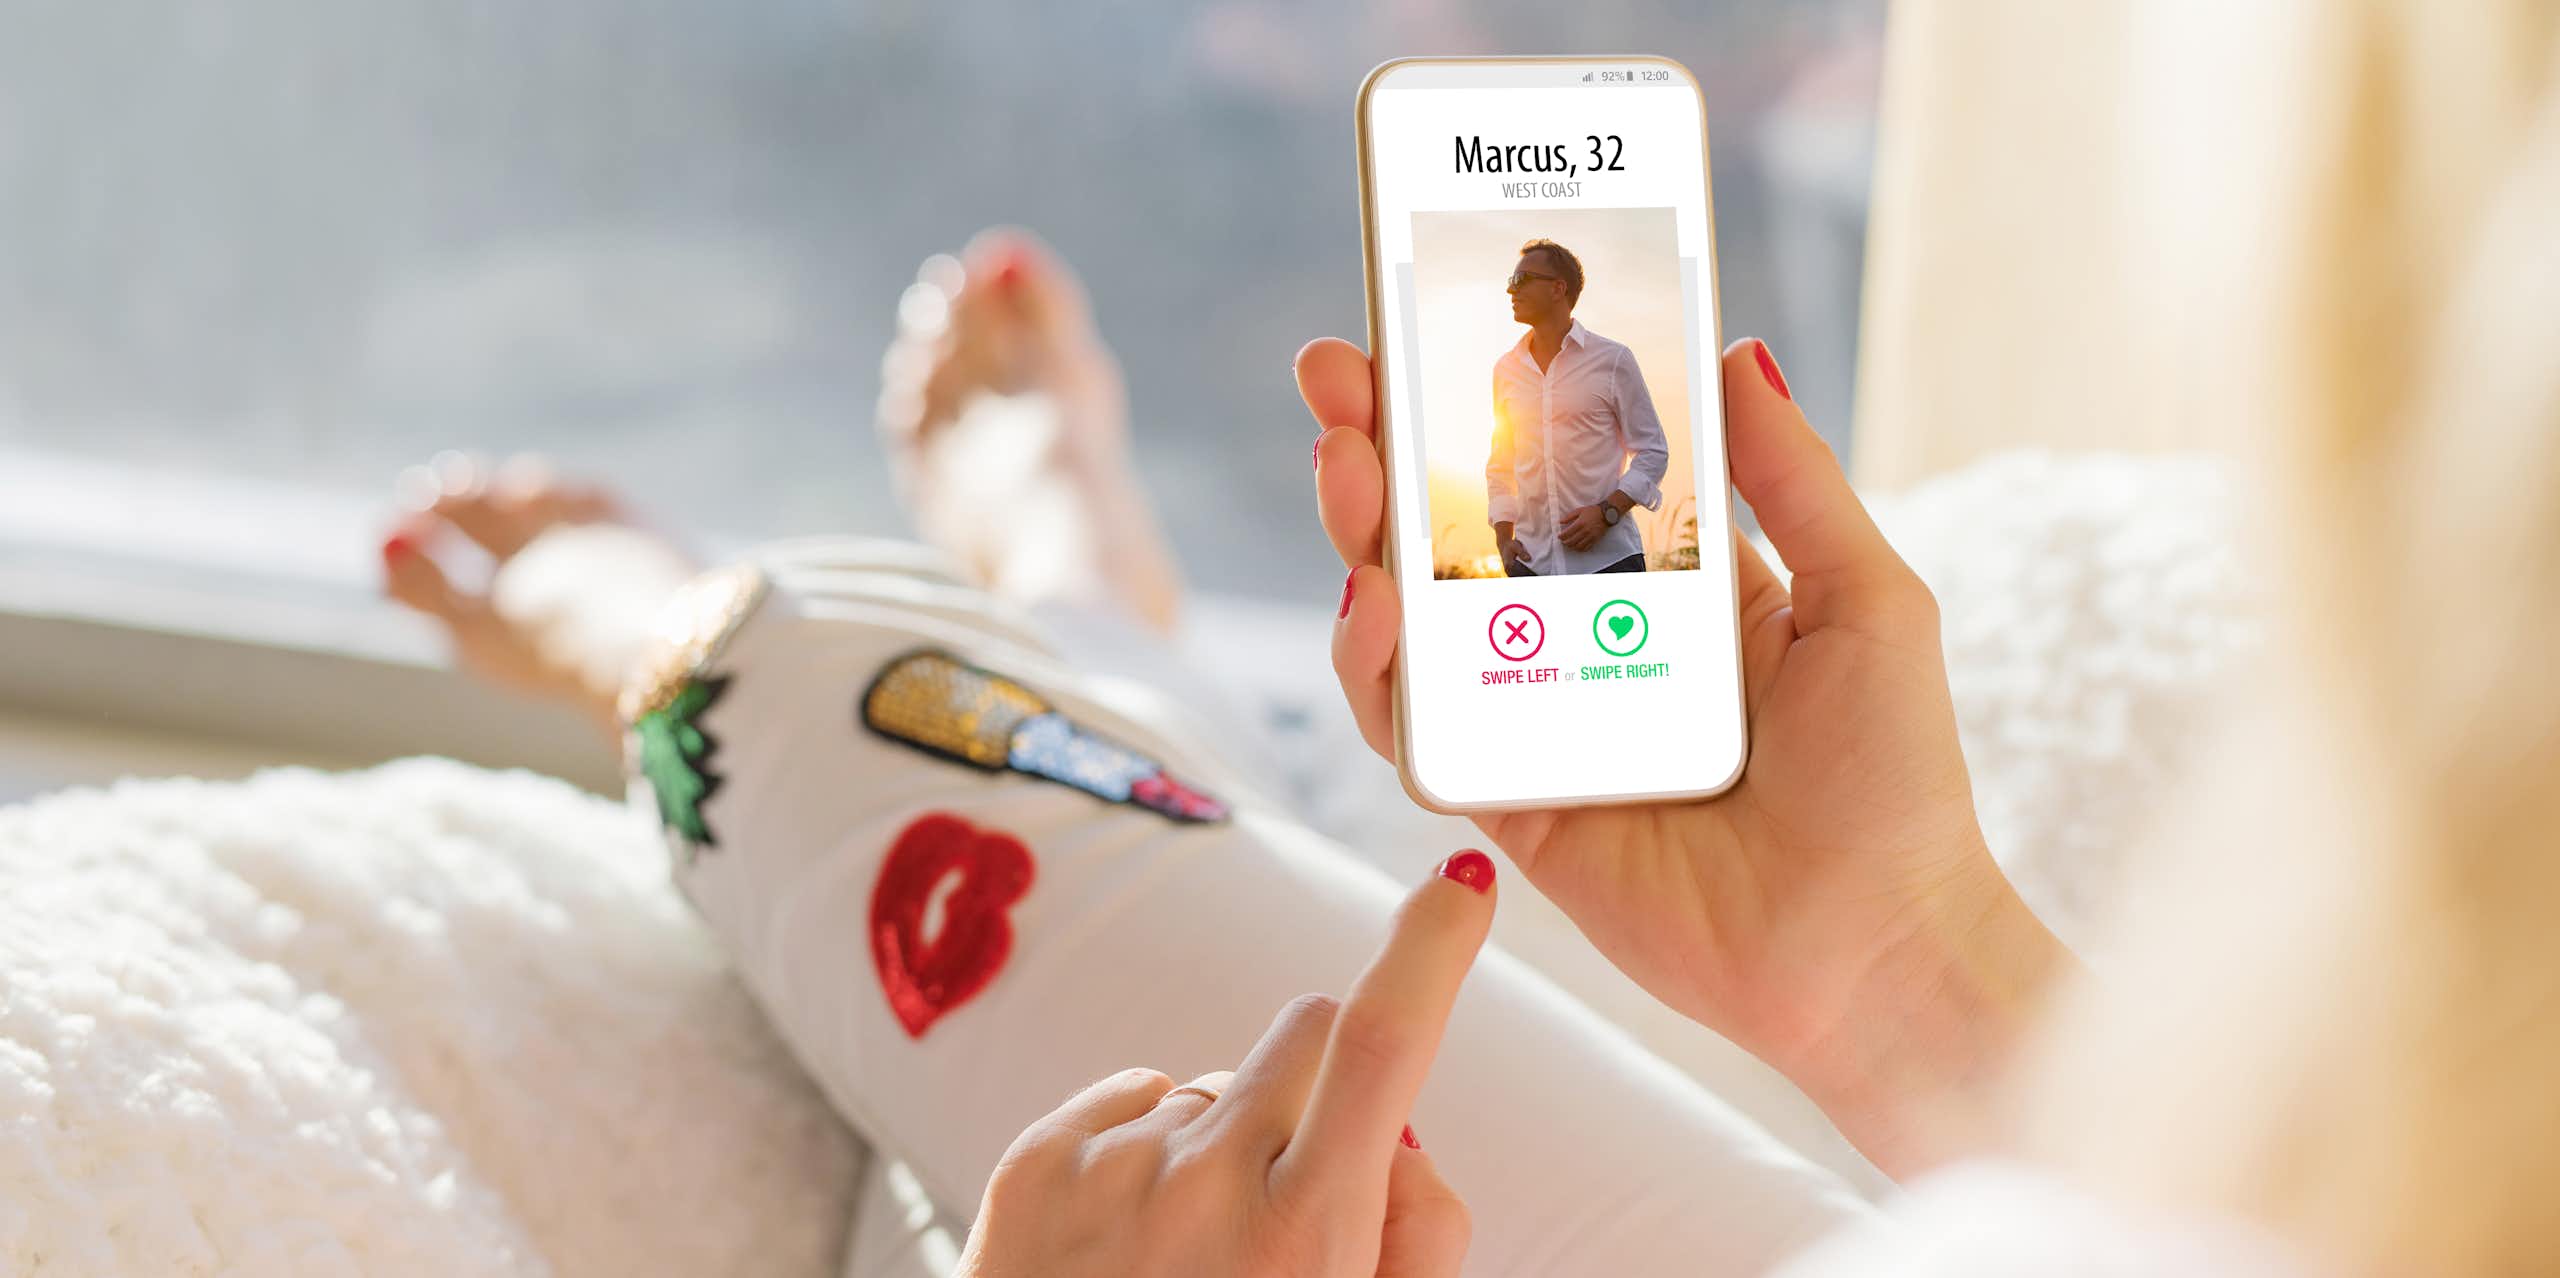 Anatomia de um ‘match’: como os aplicativos de relacionamento podem afetar a saúde mental?